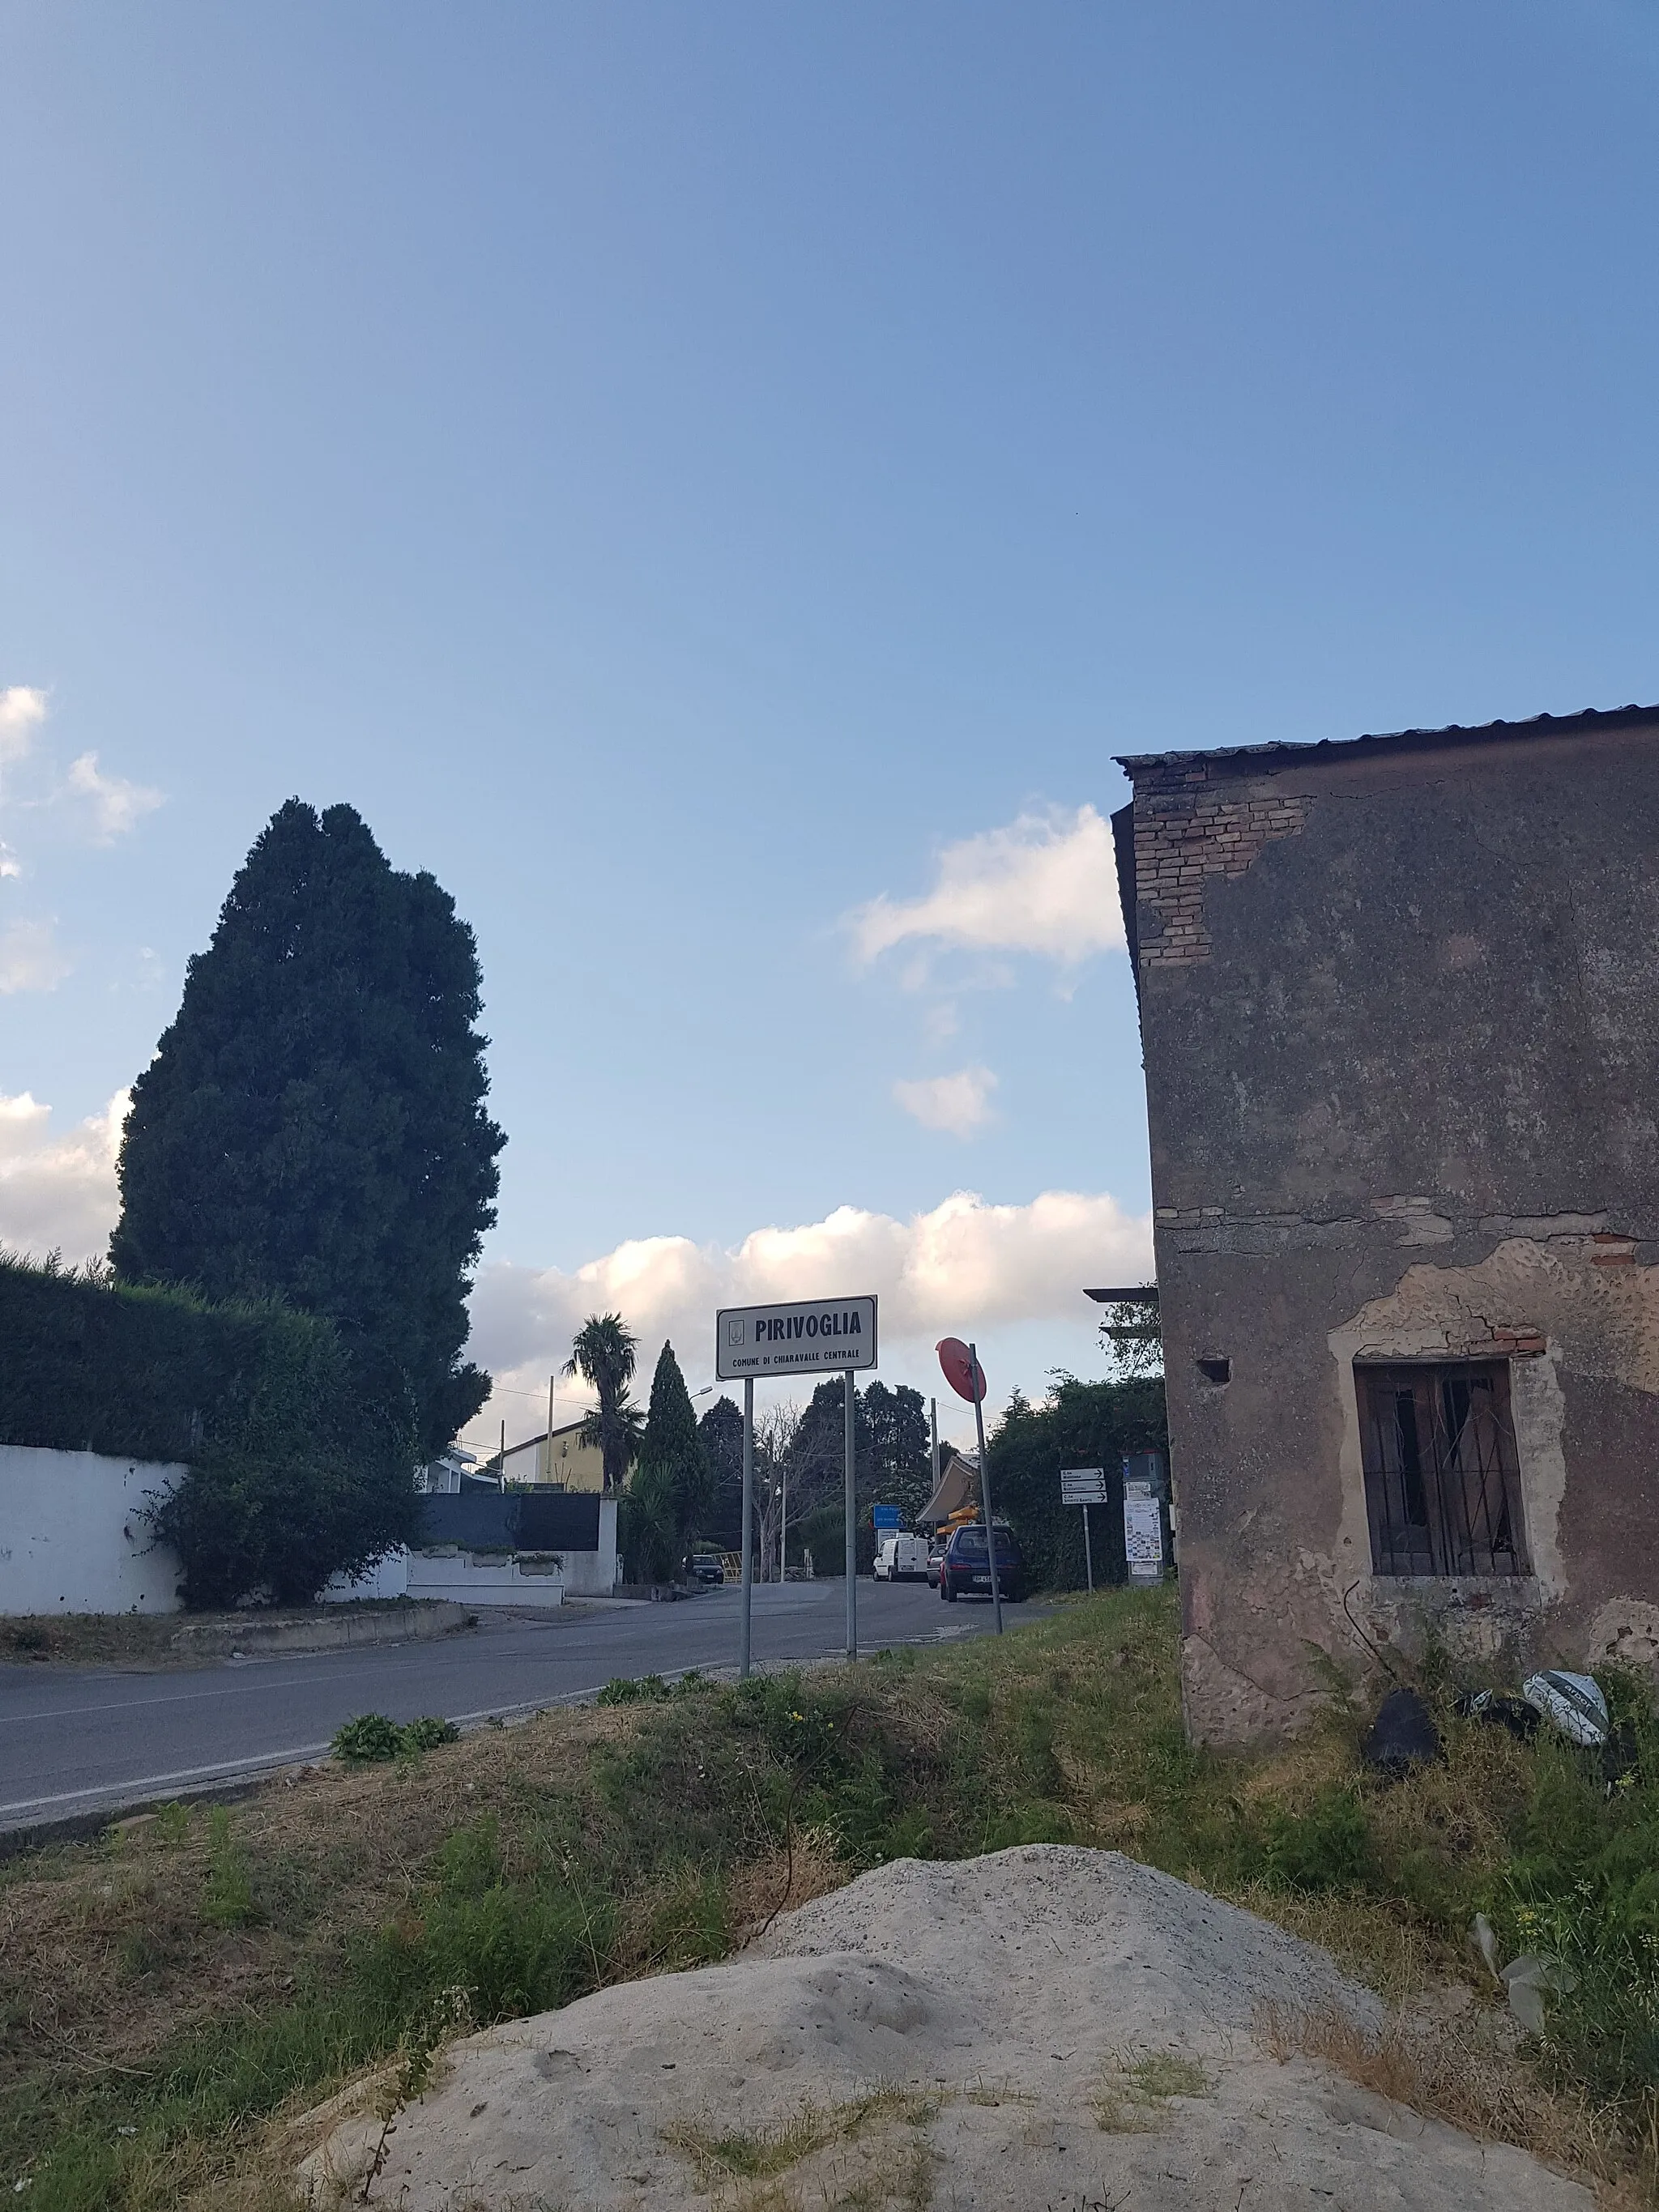 Photo showing: Ingresso nella frazione di Pirivoglia provenendo dalla Città di Chiaravalle Centrale a cui la frazione appartiene